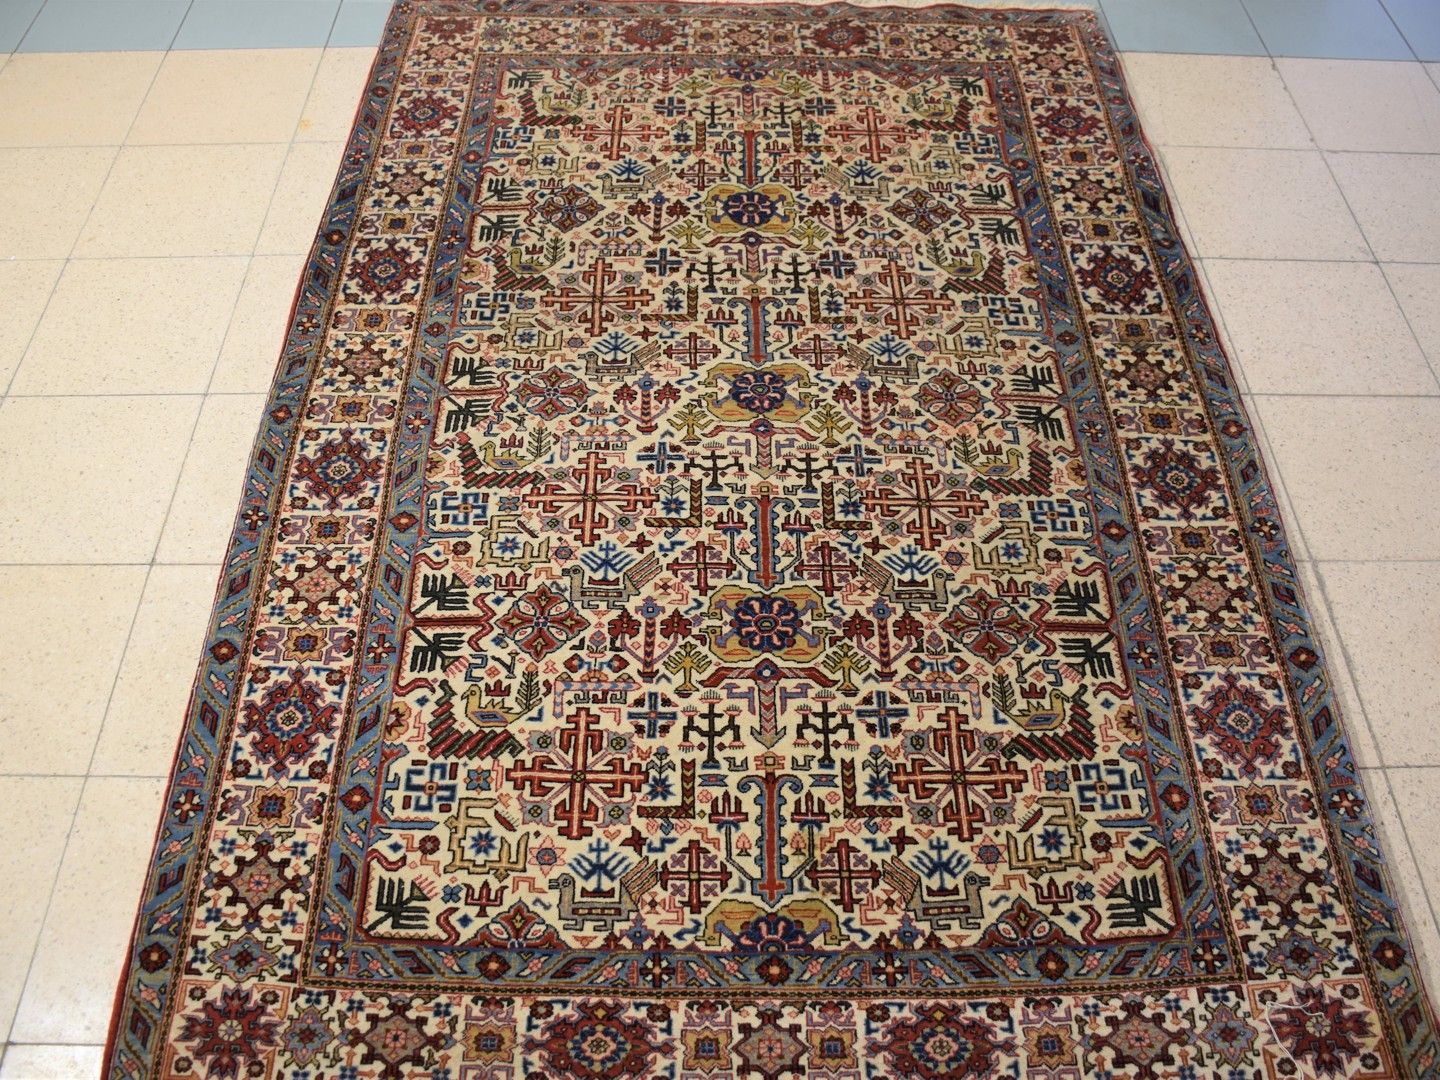 Null Iranischer Teppich 207 x 139 cm.